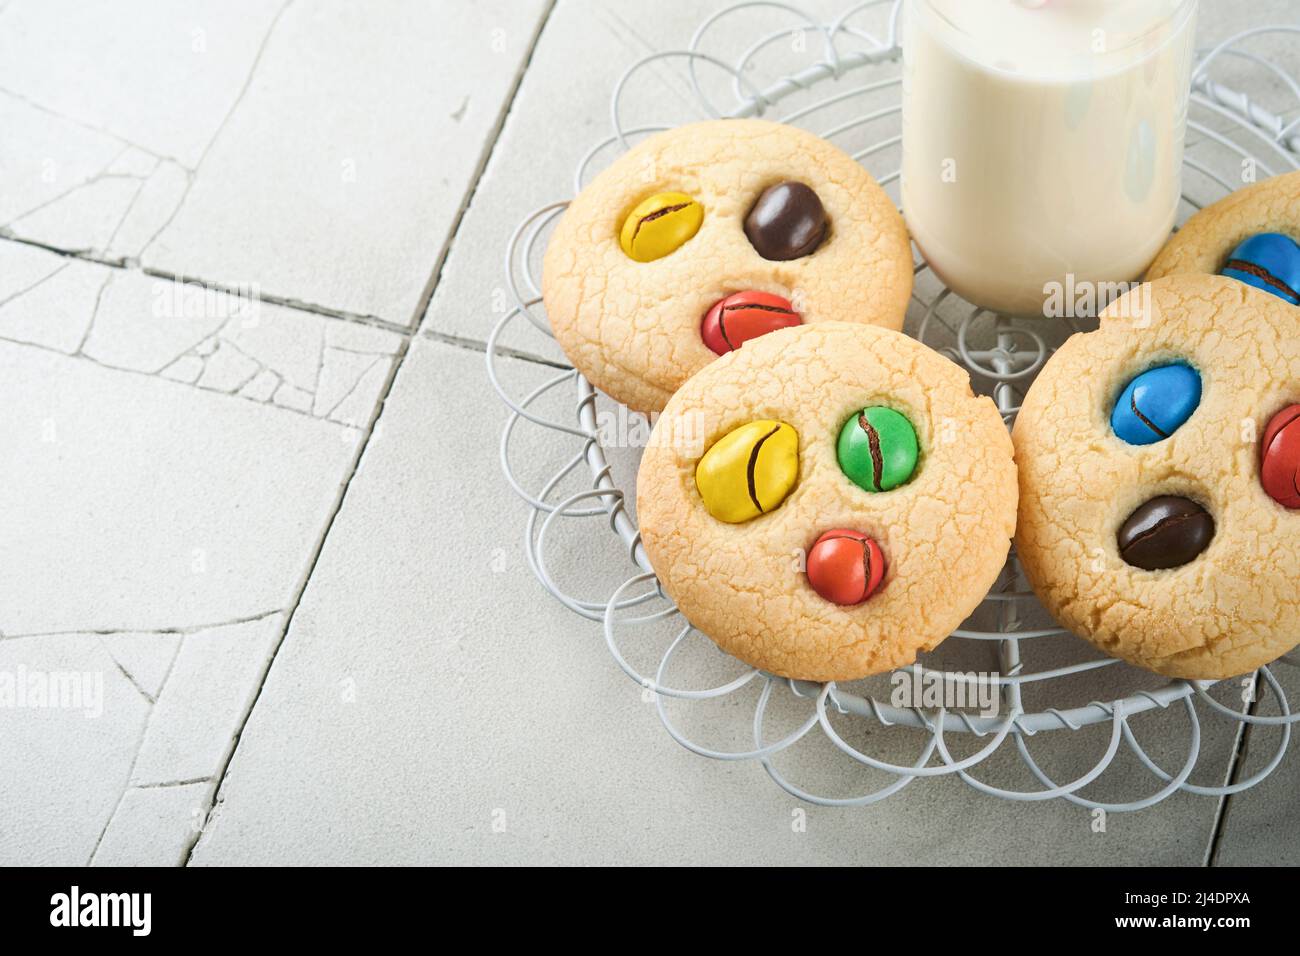 Biscotti fatti in casa con caramelle colorate al cioccolato e latte. Accatastate biscotti frollini con caramelle multicolore sul piatto con una bottiglia di latte accesa Foto Stock